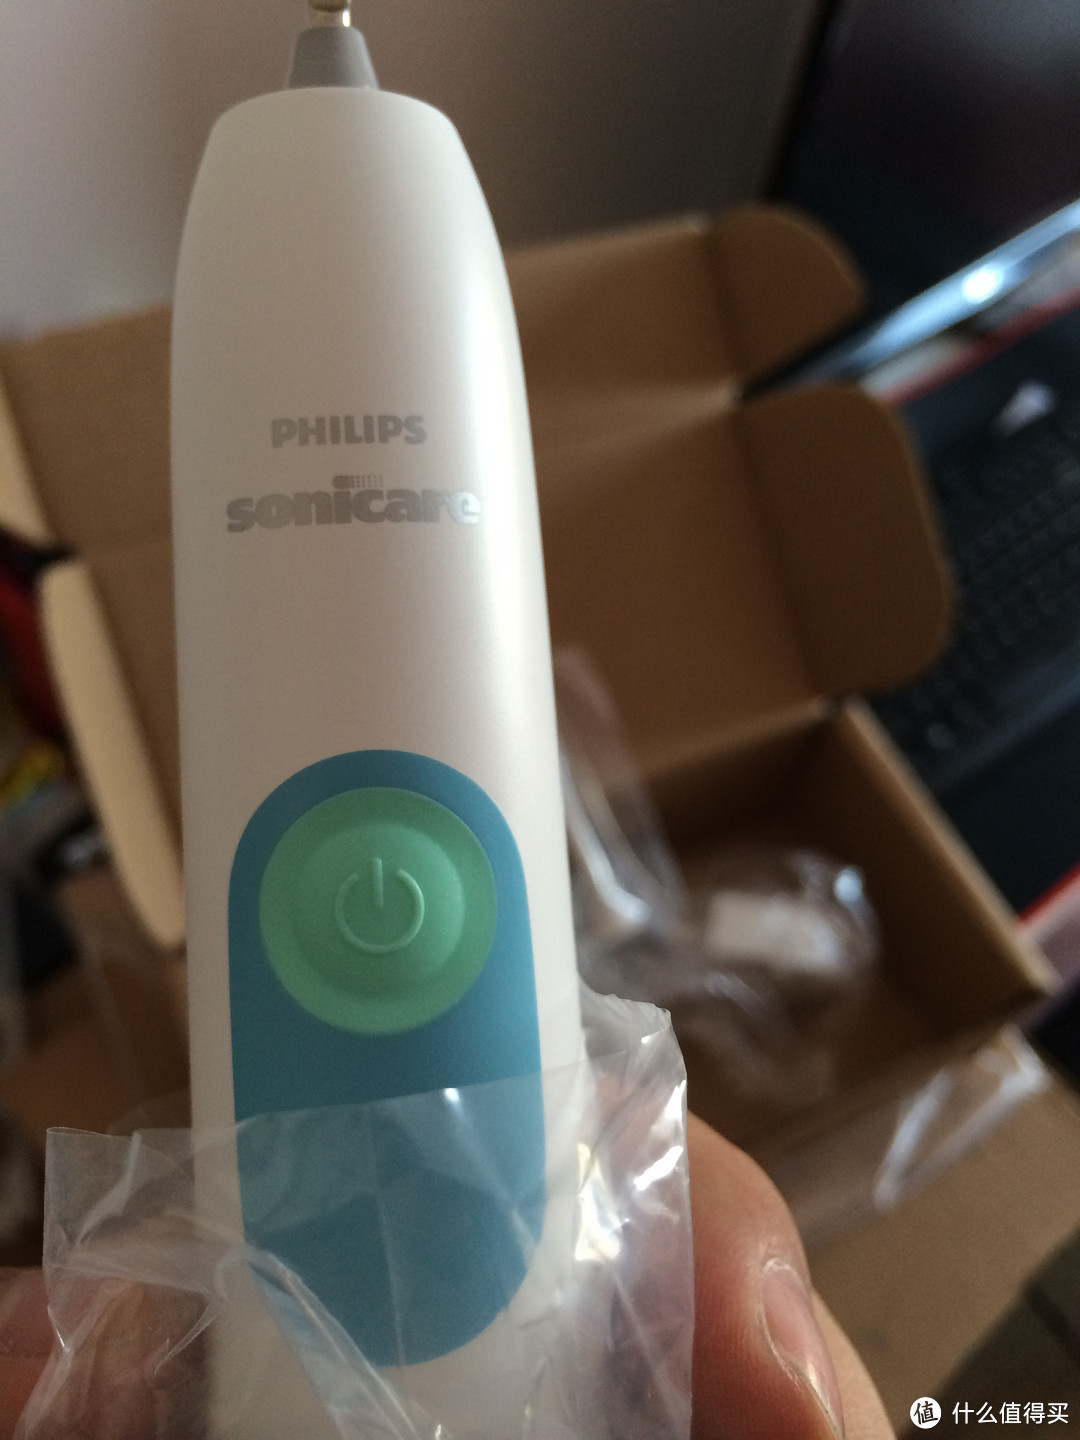 牙刷柄上“Philips sonicare”